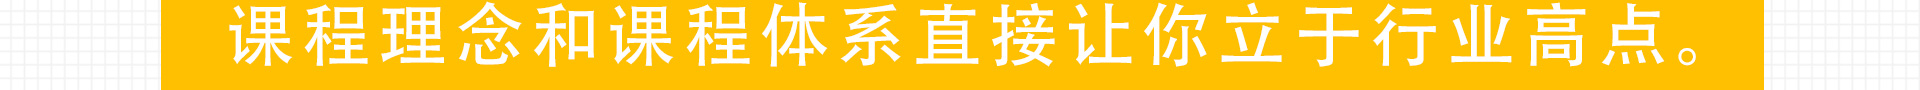 加盟网站zuizhong_153.jpg